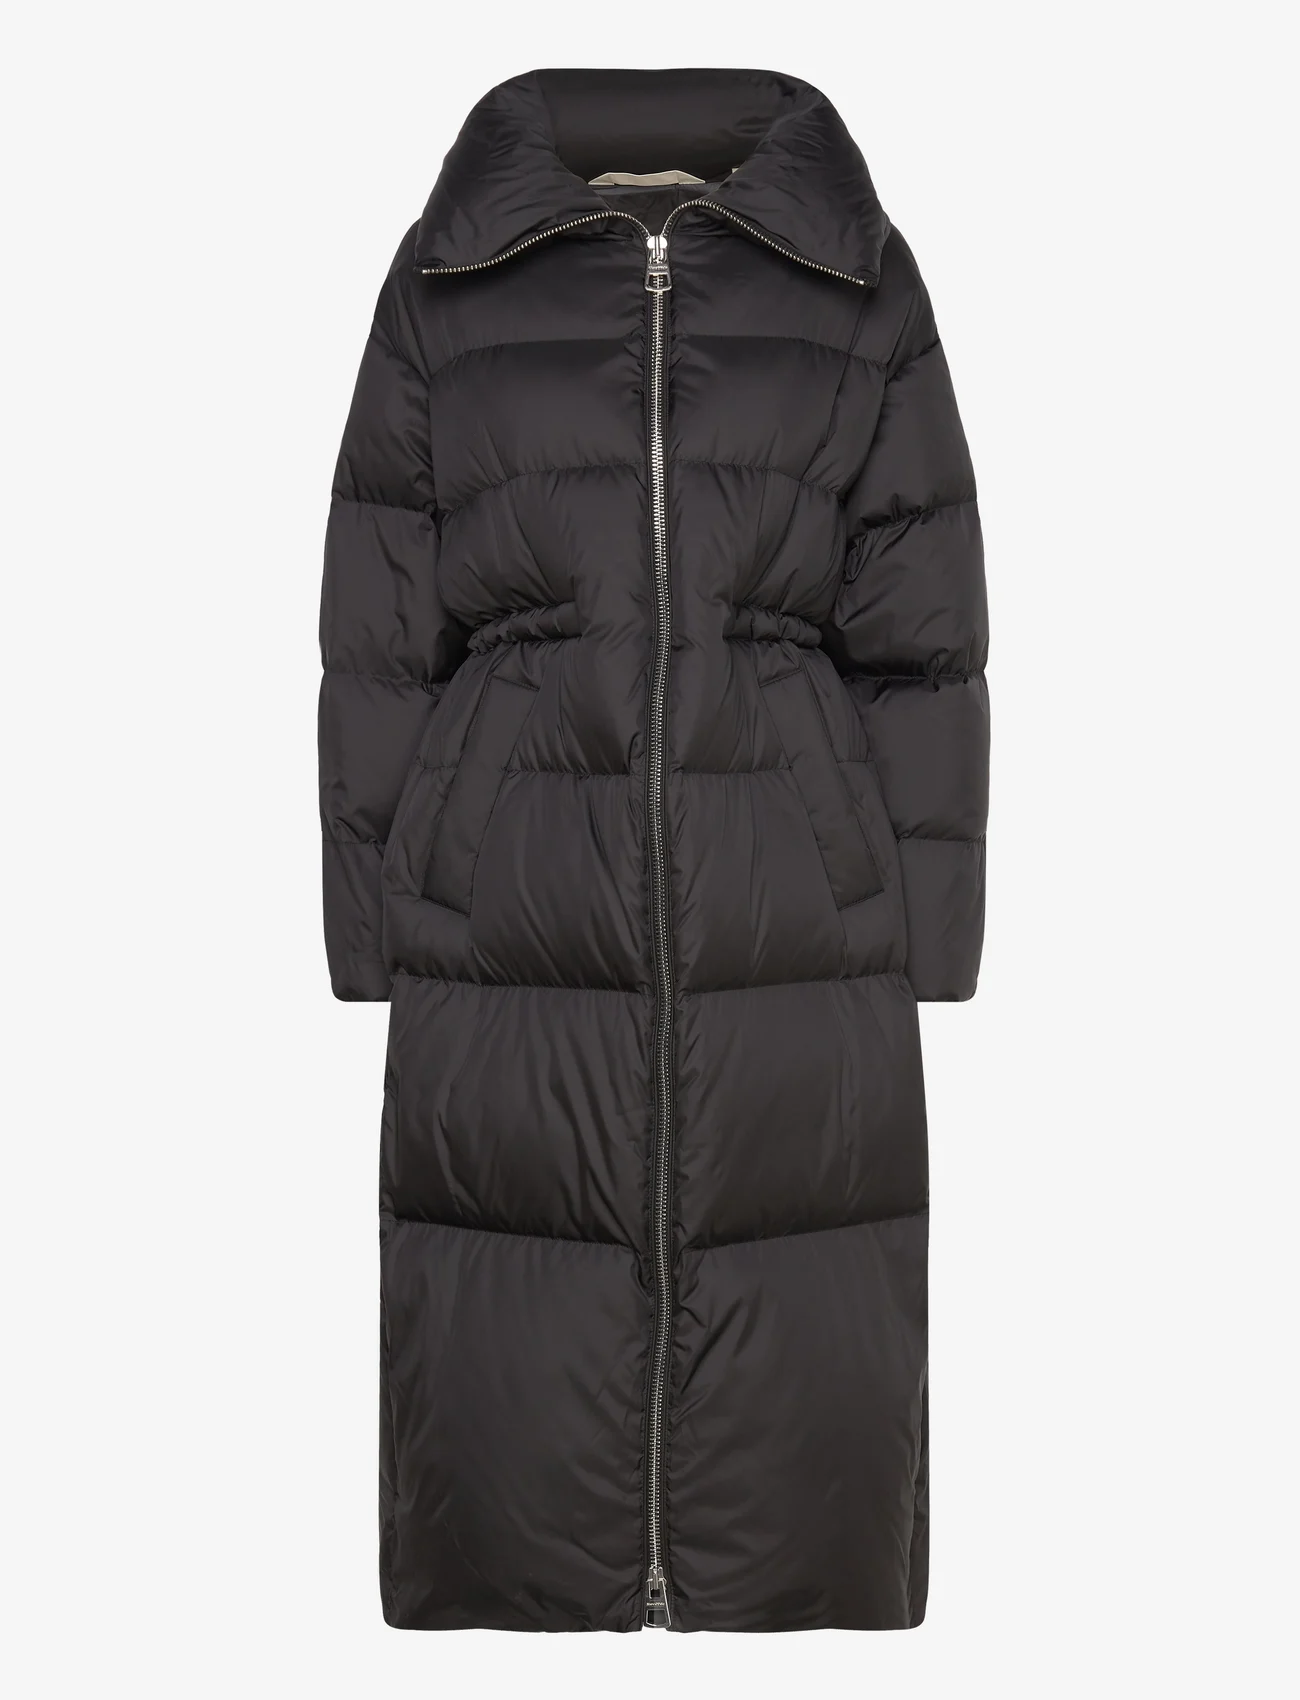 Marc O'Polo - WOVEN COATS - winter jackets - black - 0